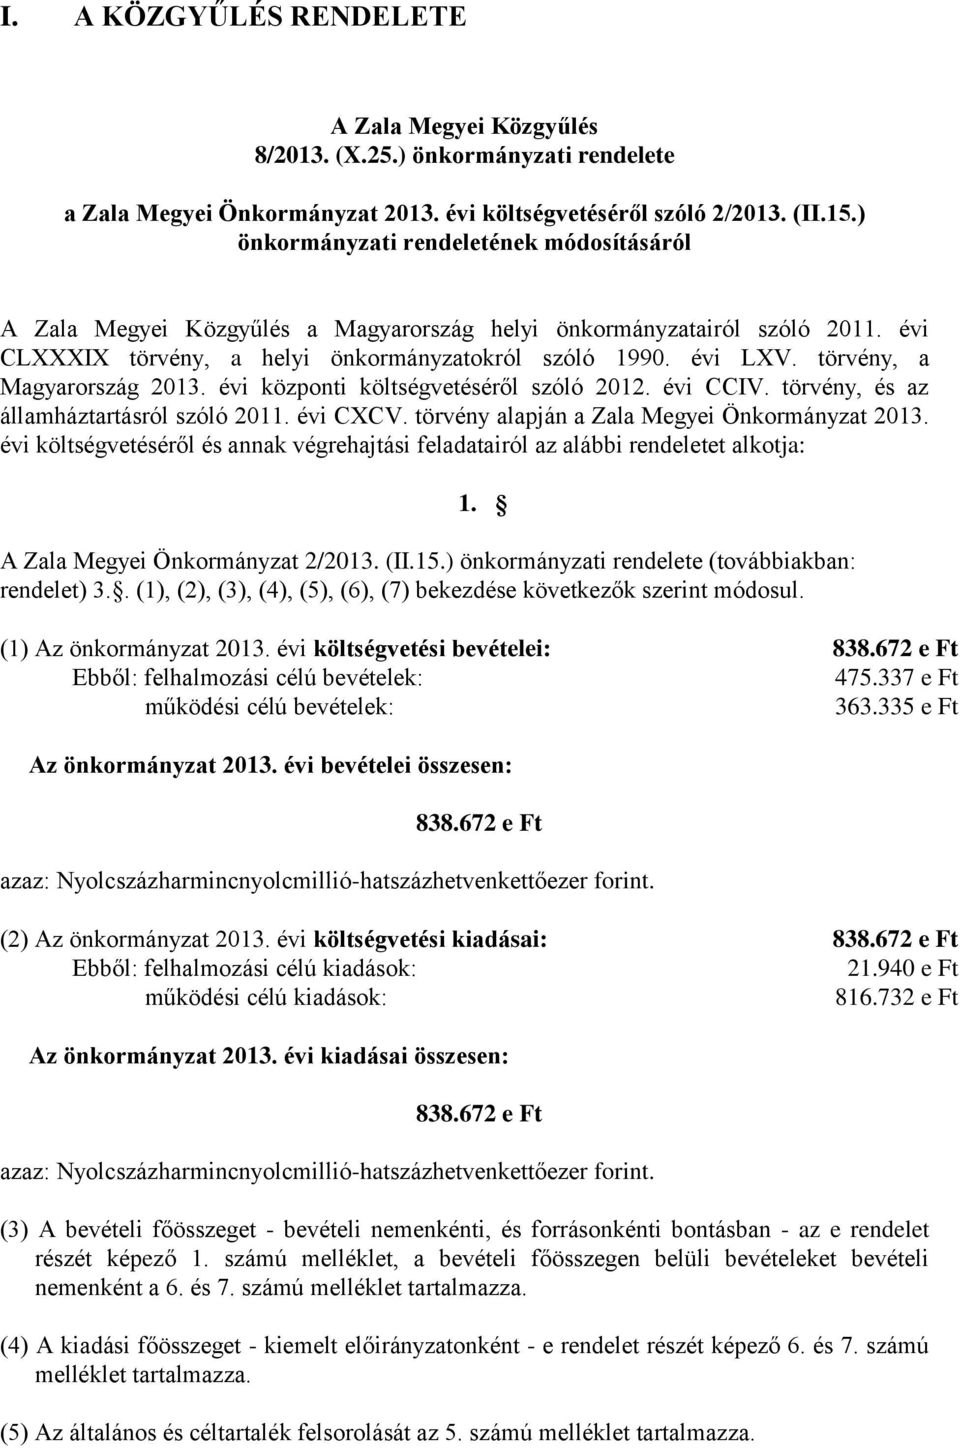 törvény, a Magyarország 2013. évi központi költségvetéséről szóló 2012. évi CCIV. törvény, és az államháztartásról szóló 2011. évi CXCV. törvény alapján a Zala Megyei Önkormányzat 2013.